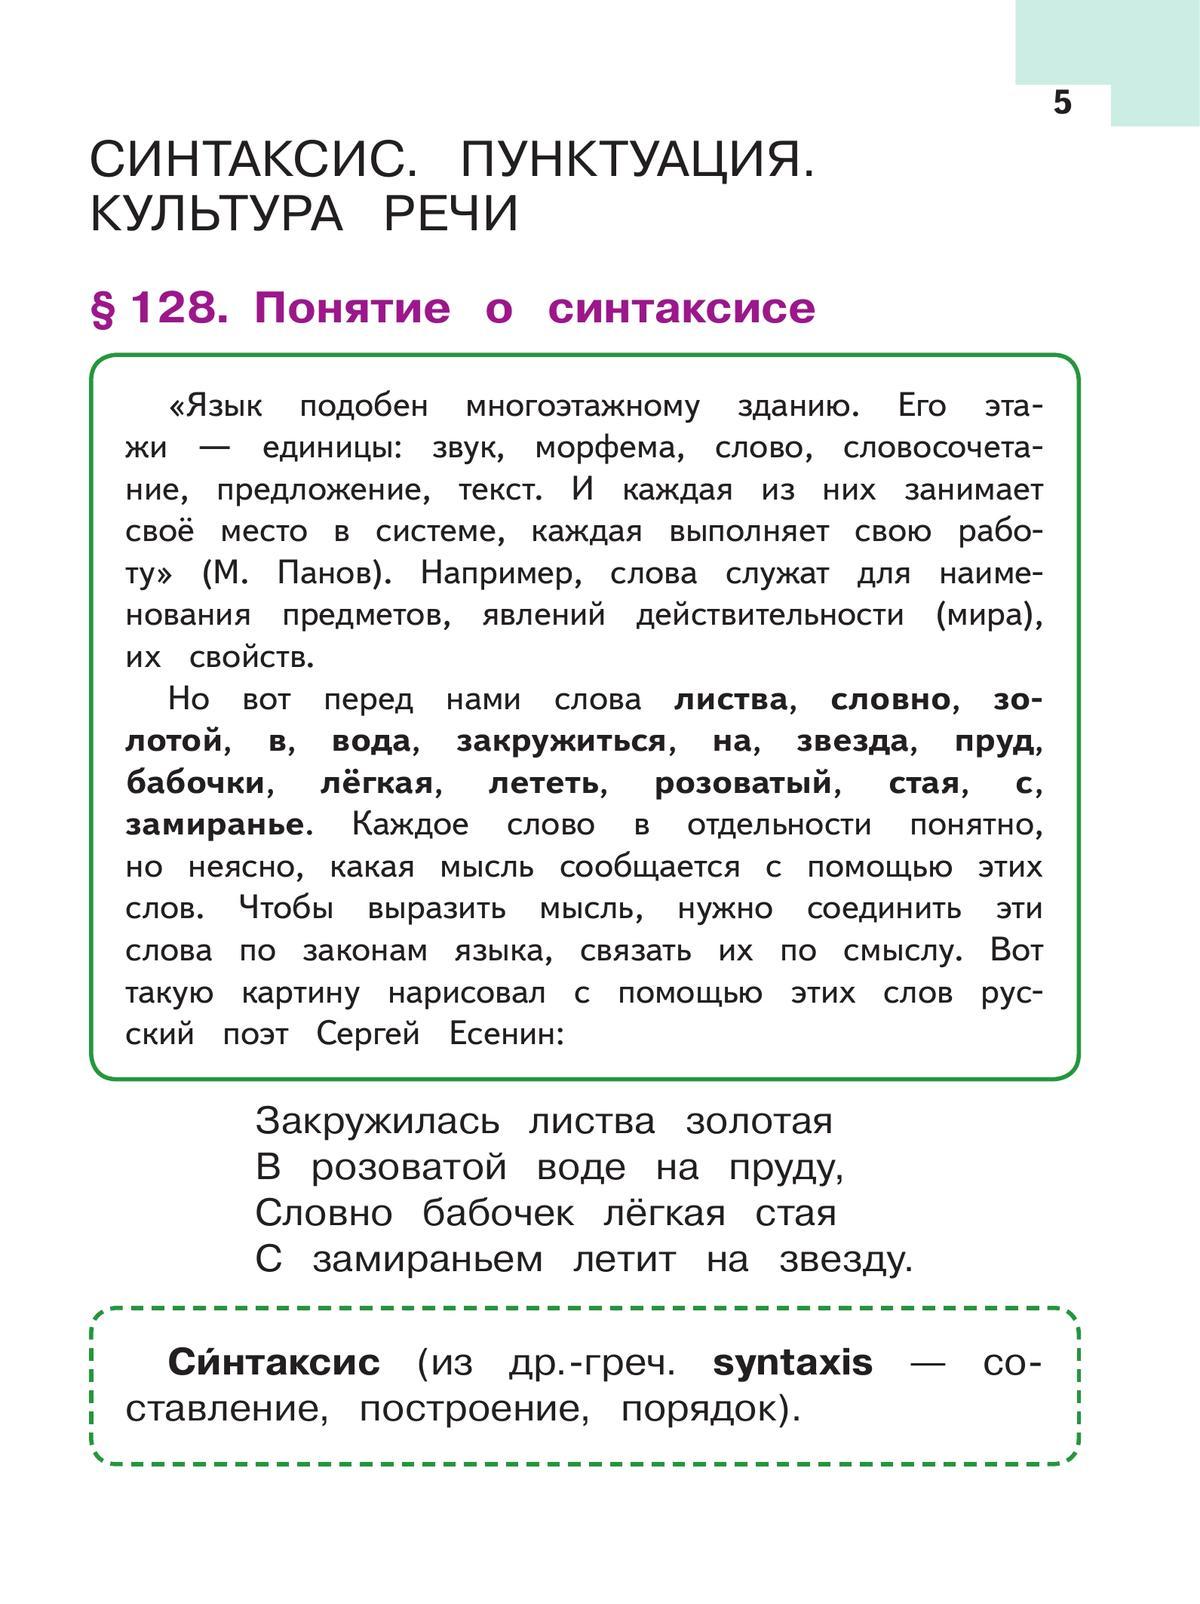 Русский язык. 5 класс. Учебное пособие. В 5 ч. Часть 5 (для слабовидящих обучающихся) 2